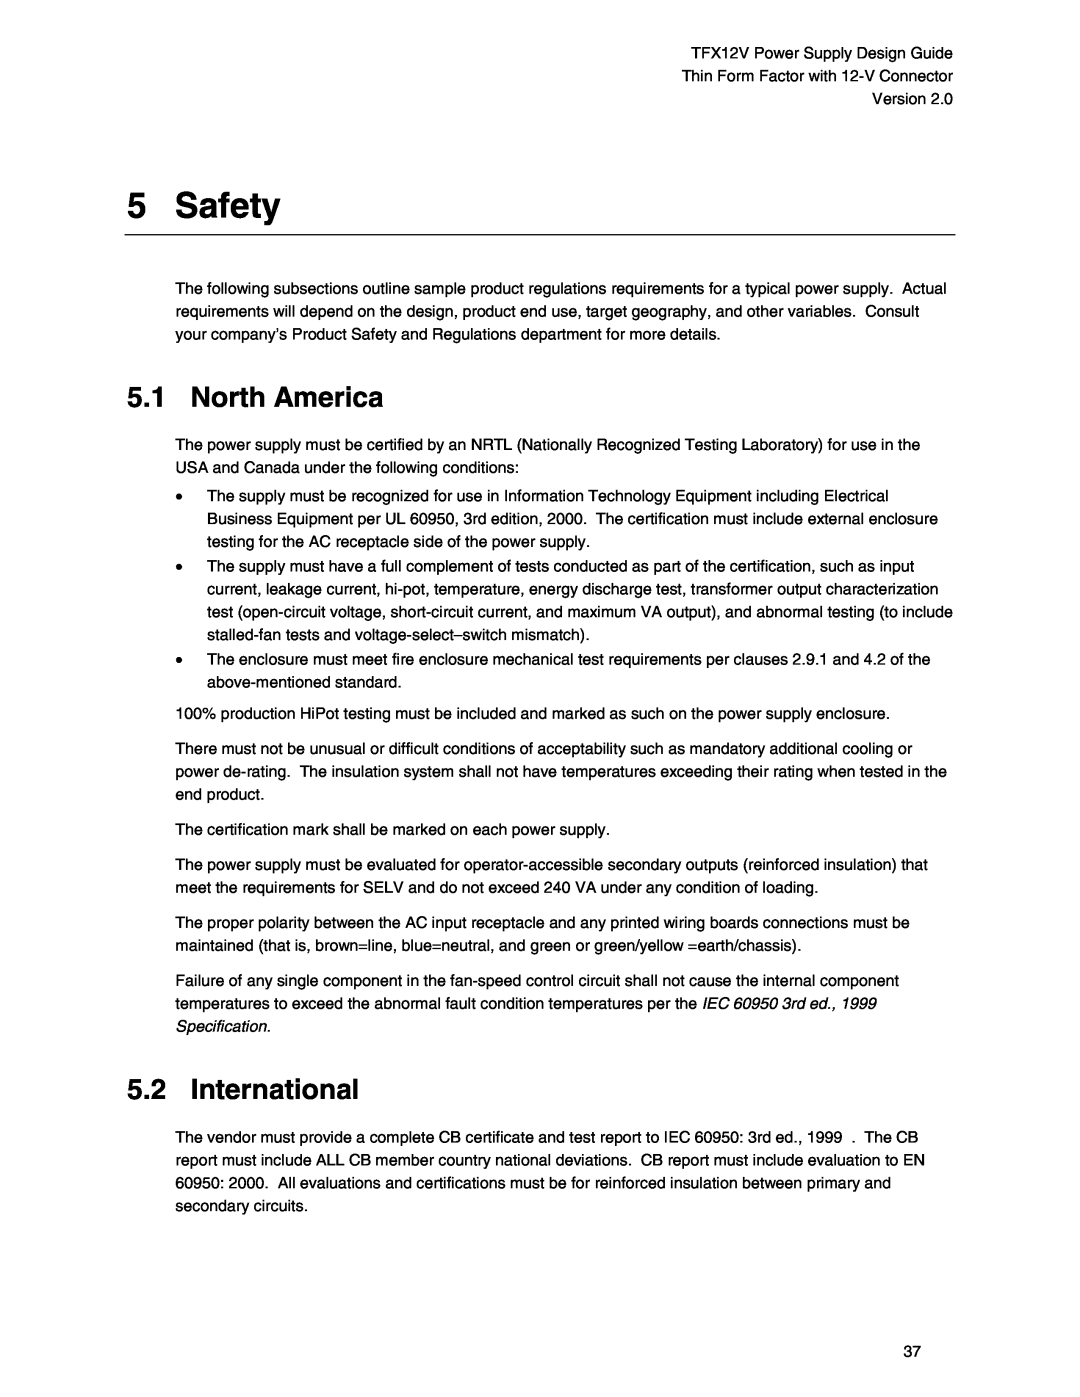 Intel TFX12V manual Safety, North America, International 